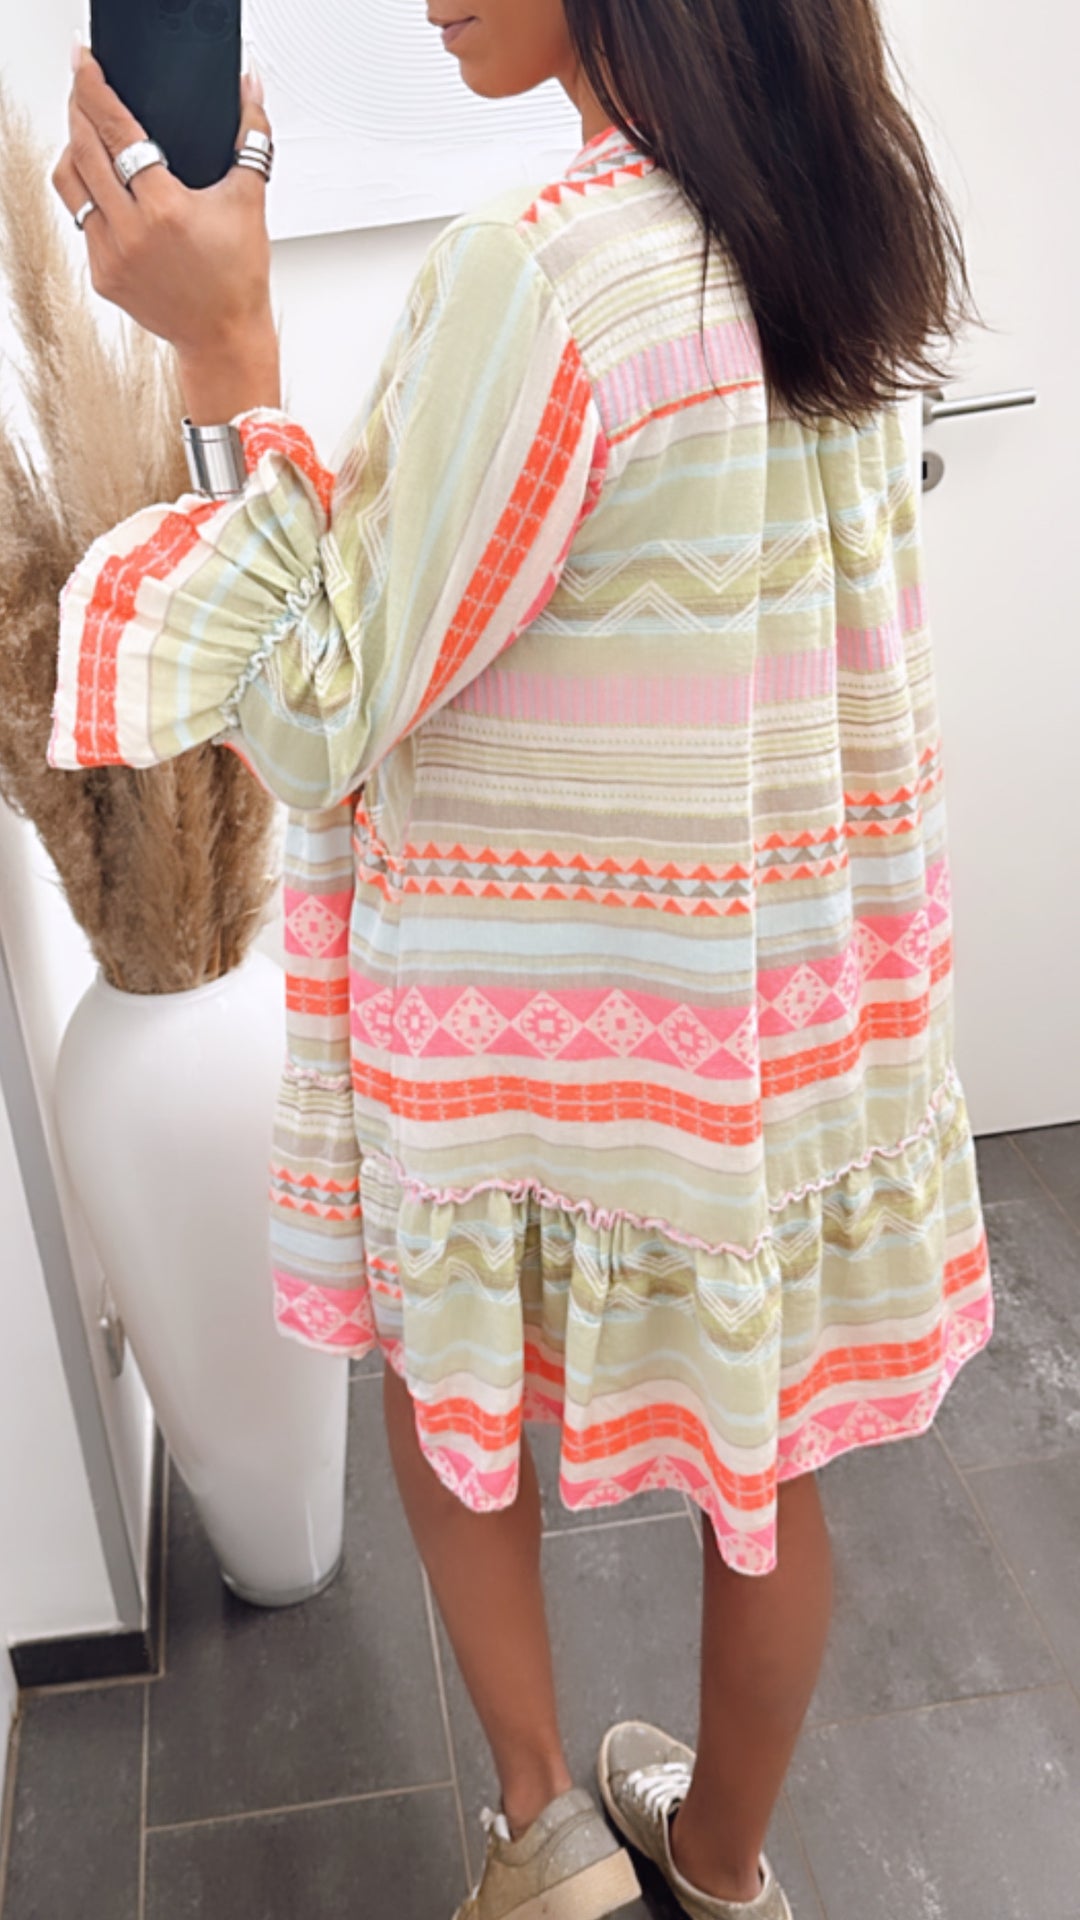 Tunika / Kleid in sommerlichen Farben / Boho grün - blau - pink Art. 5904